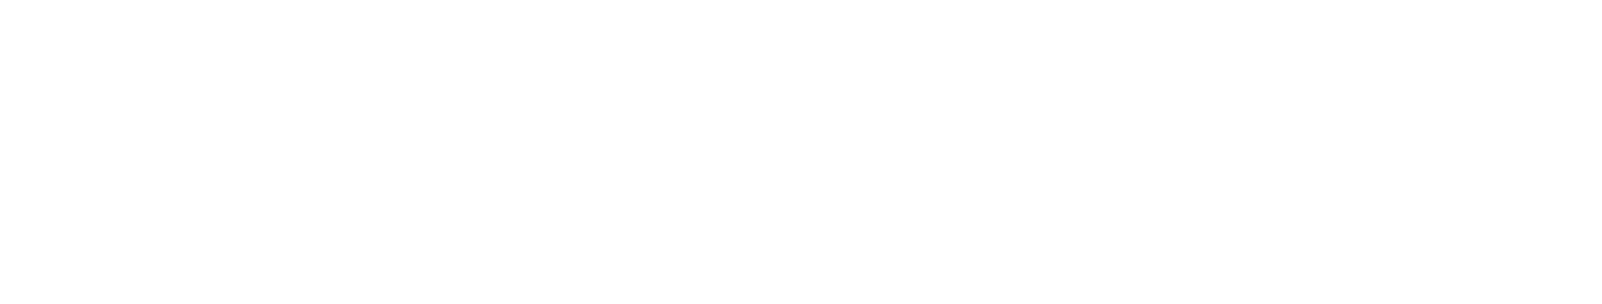 Bishop Spray Service